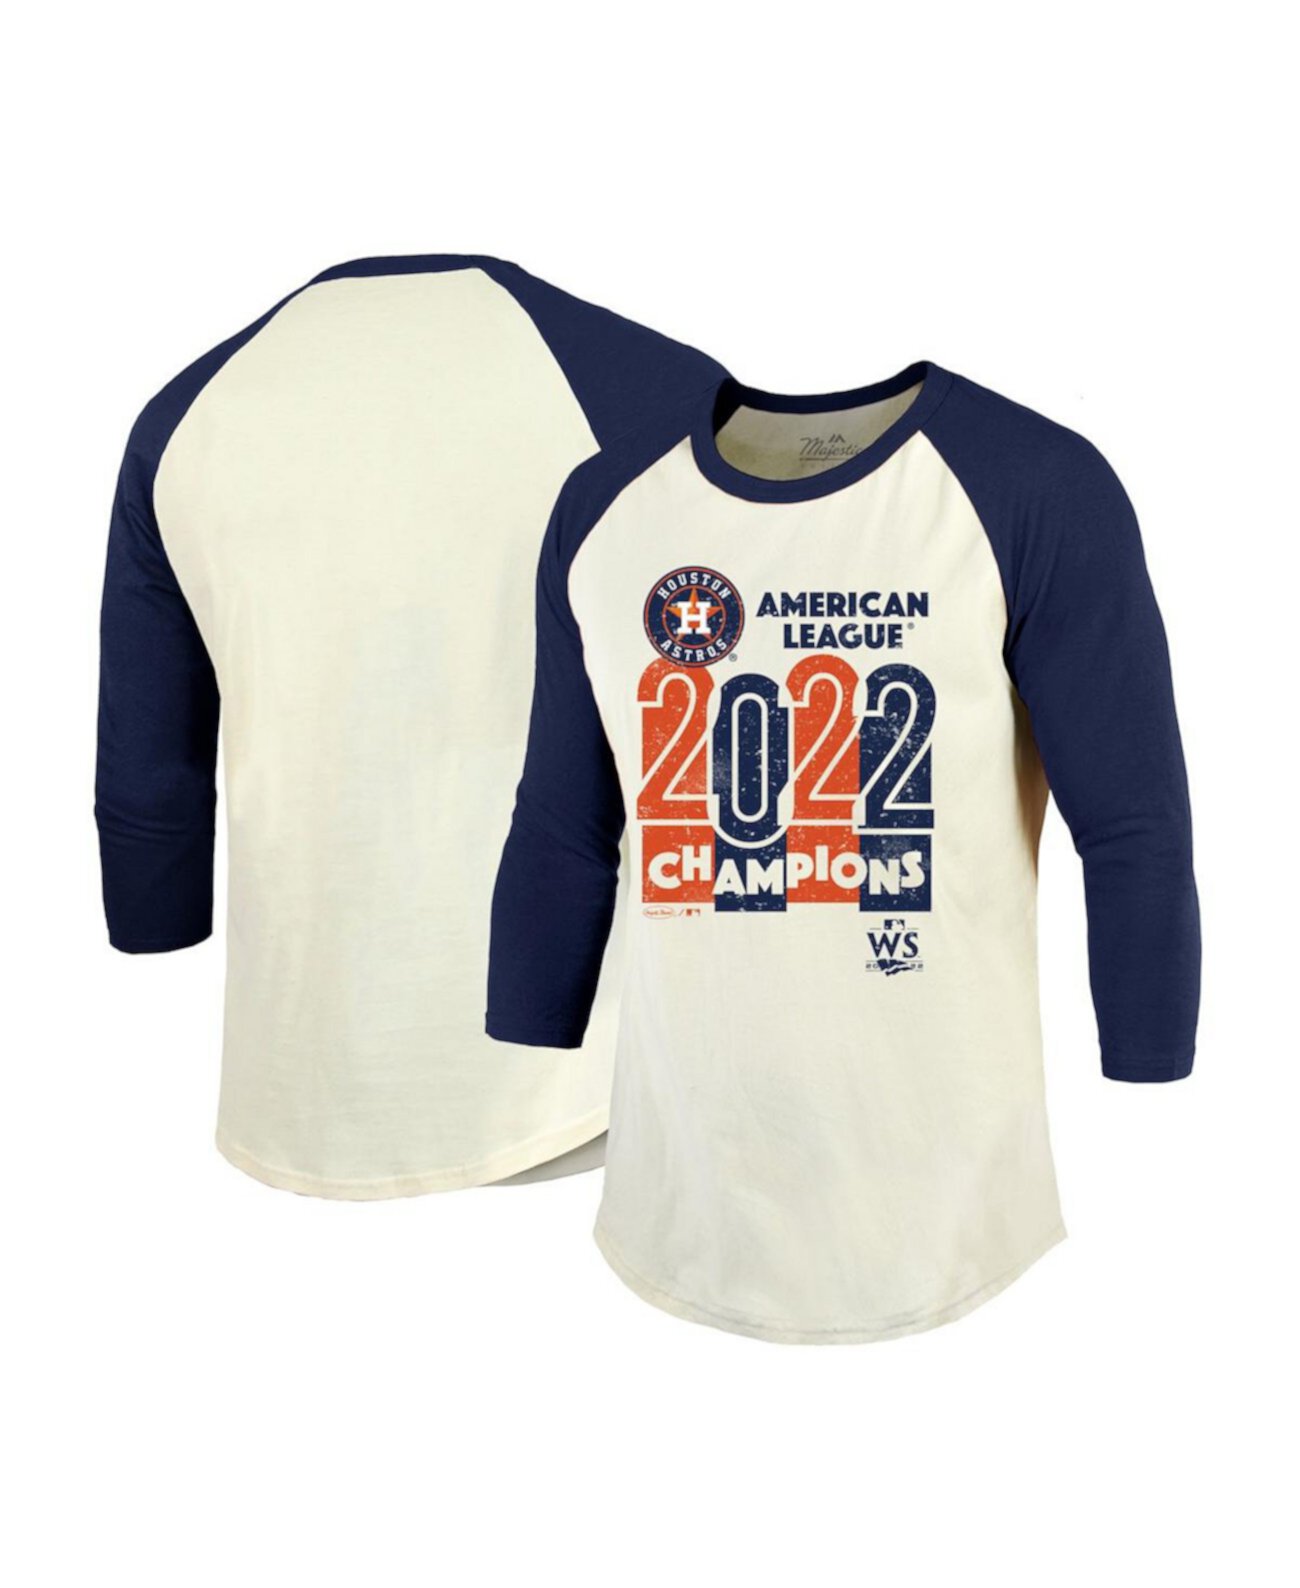 Мужская футболка Threads кремового цвета, темно-синяя, с рукавами реглан Tri-Blend Houston Astros, ежегодник Чемпионов Американской лиги 2022 Majestic